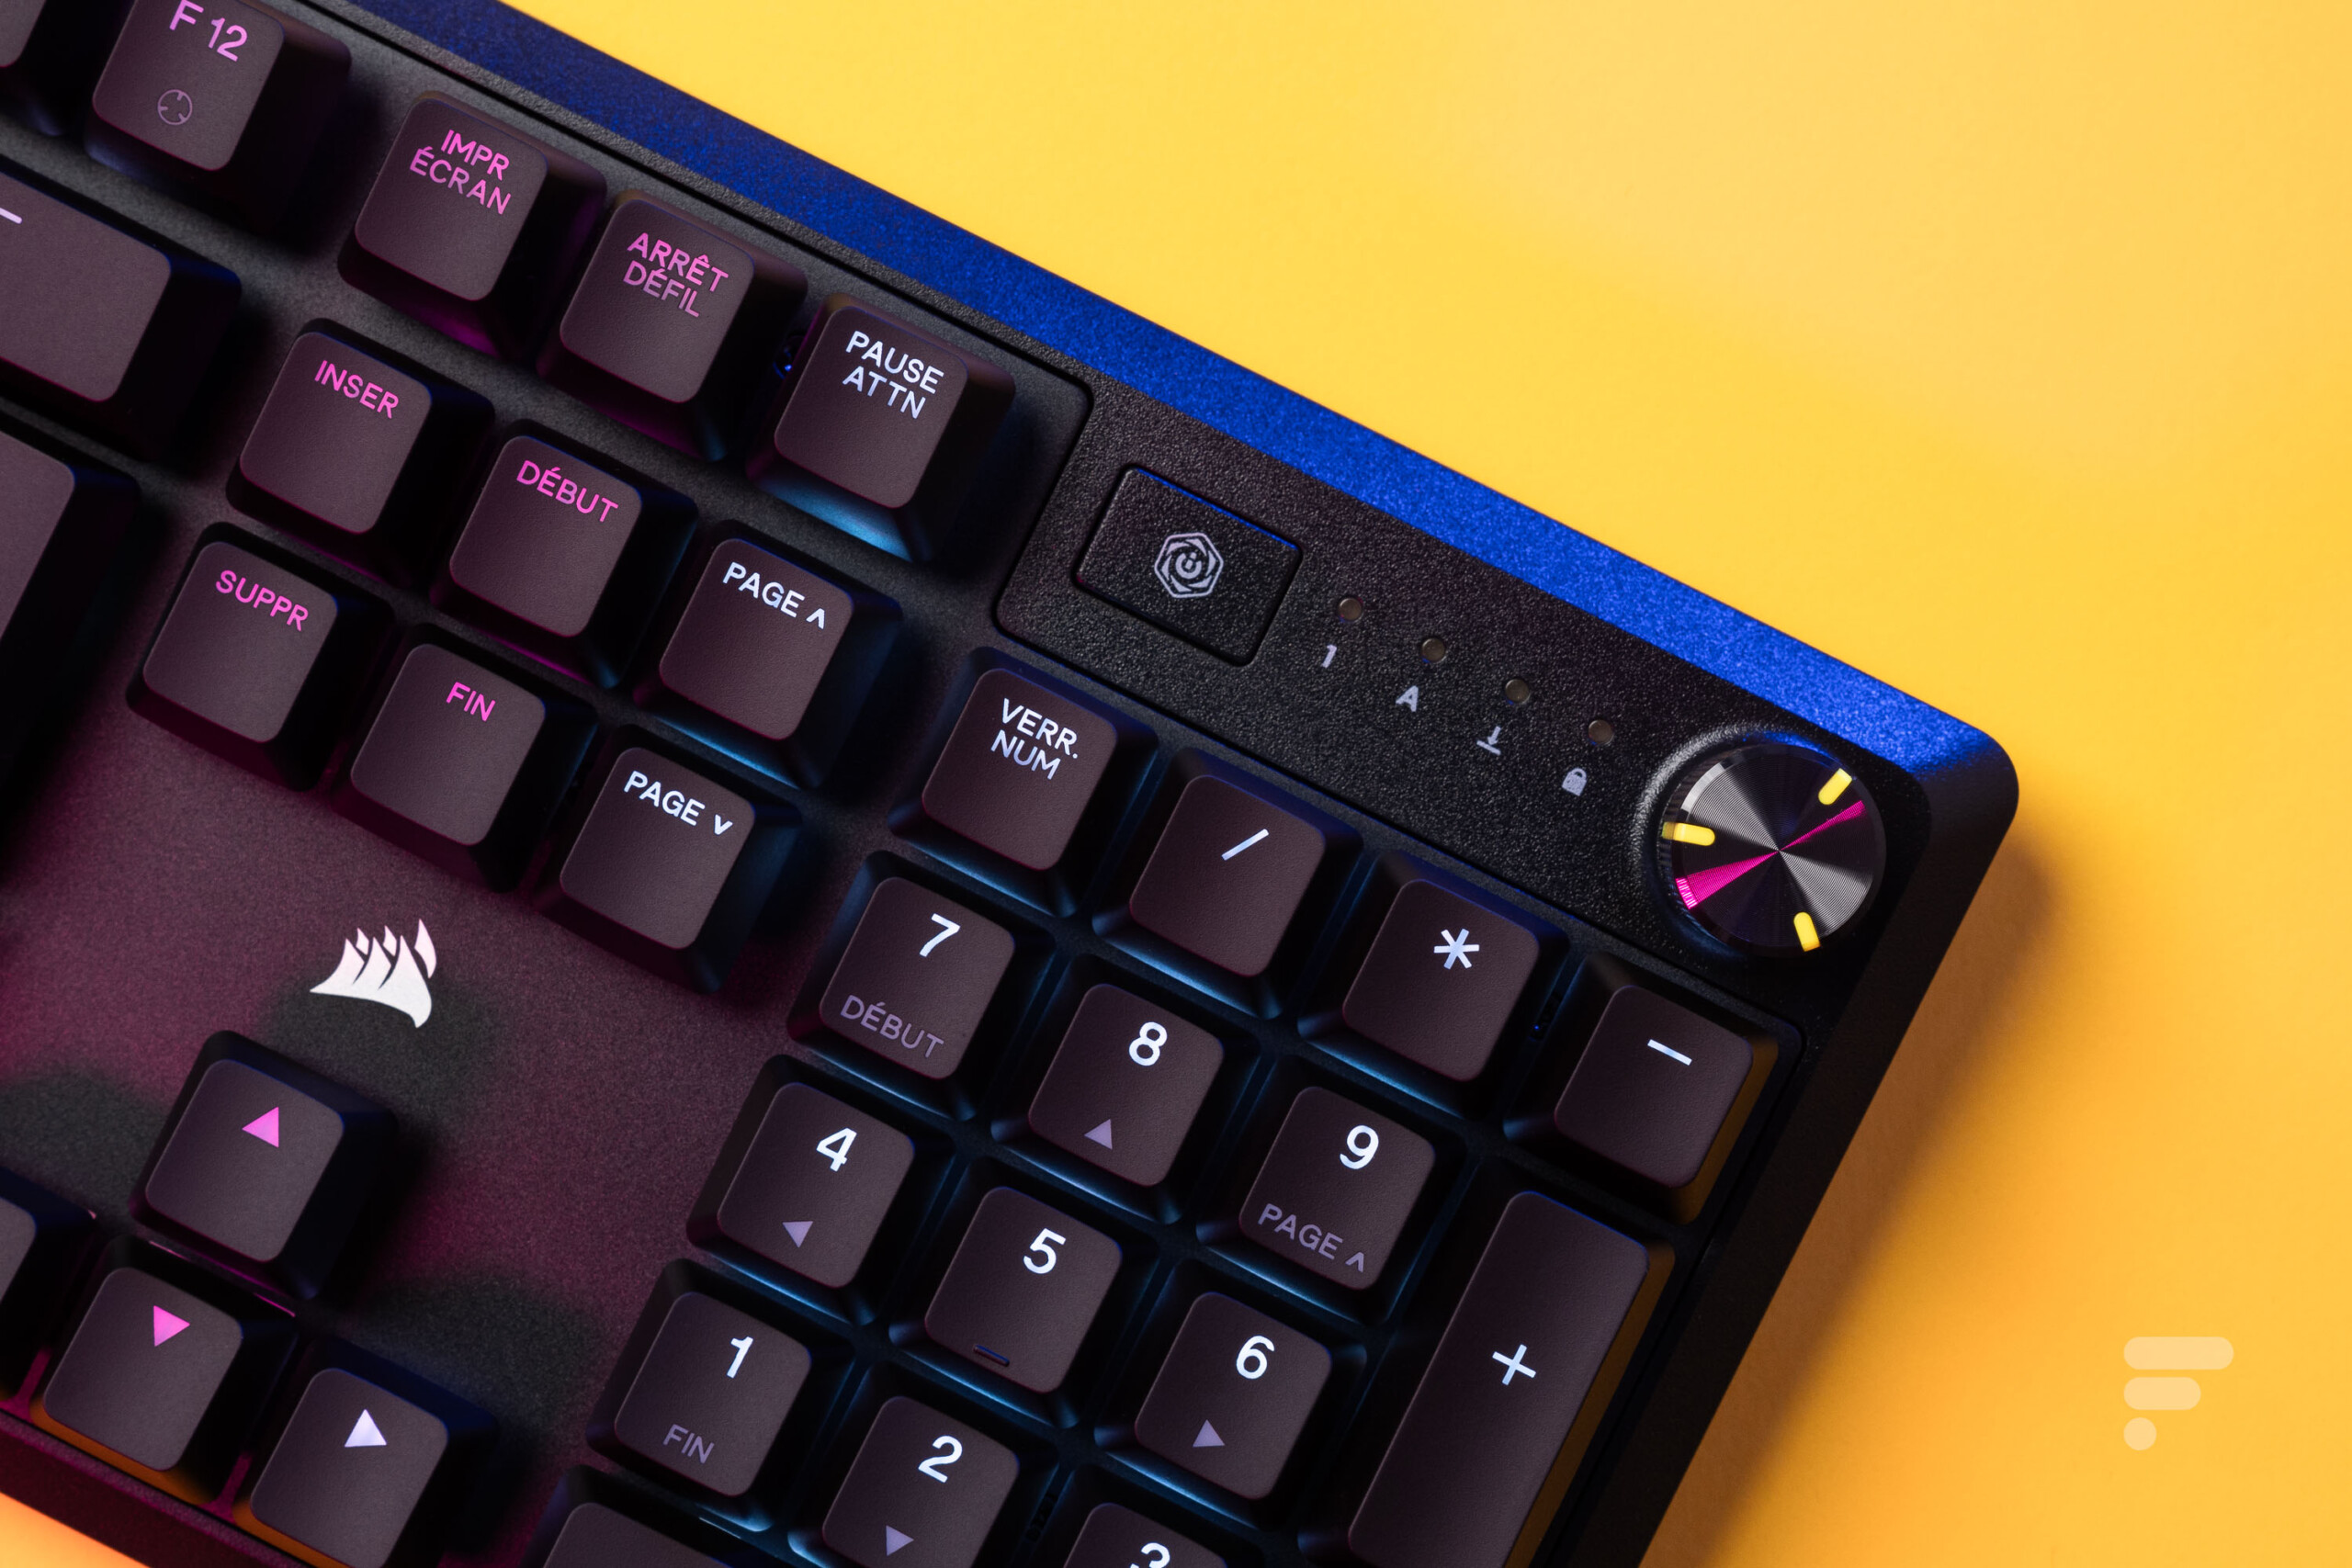 Corsair lance son nouveau clavier mécanique K70 RGB PRO